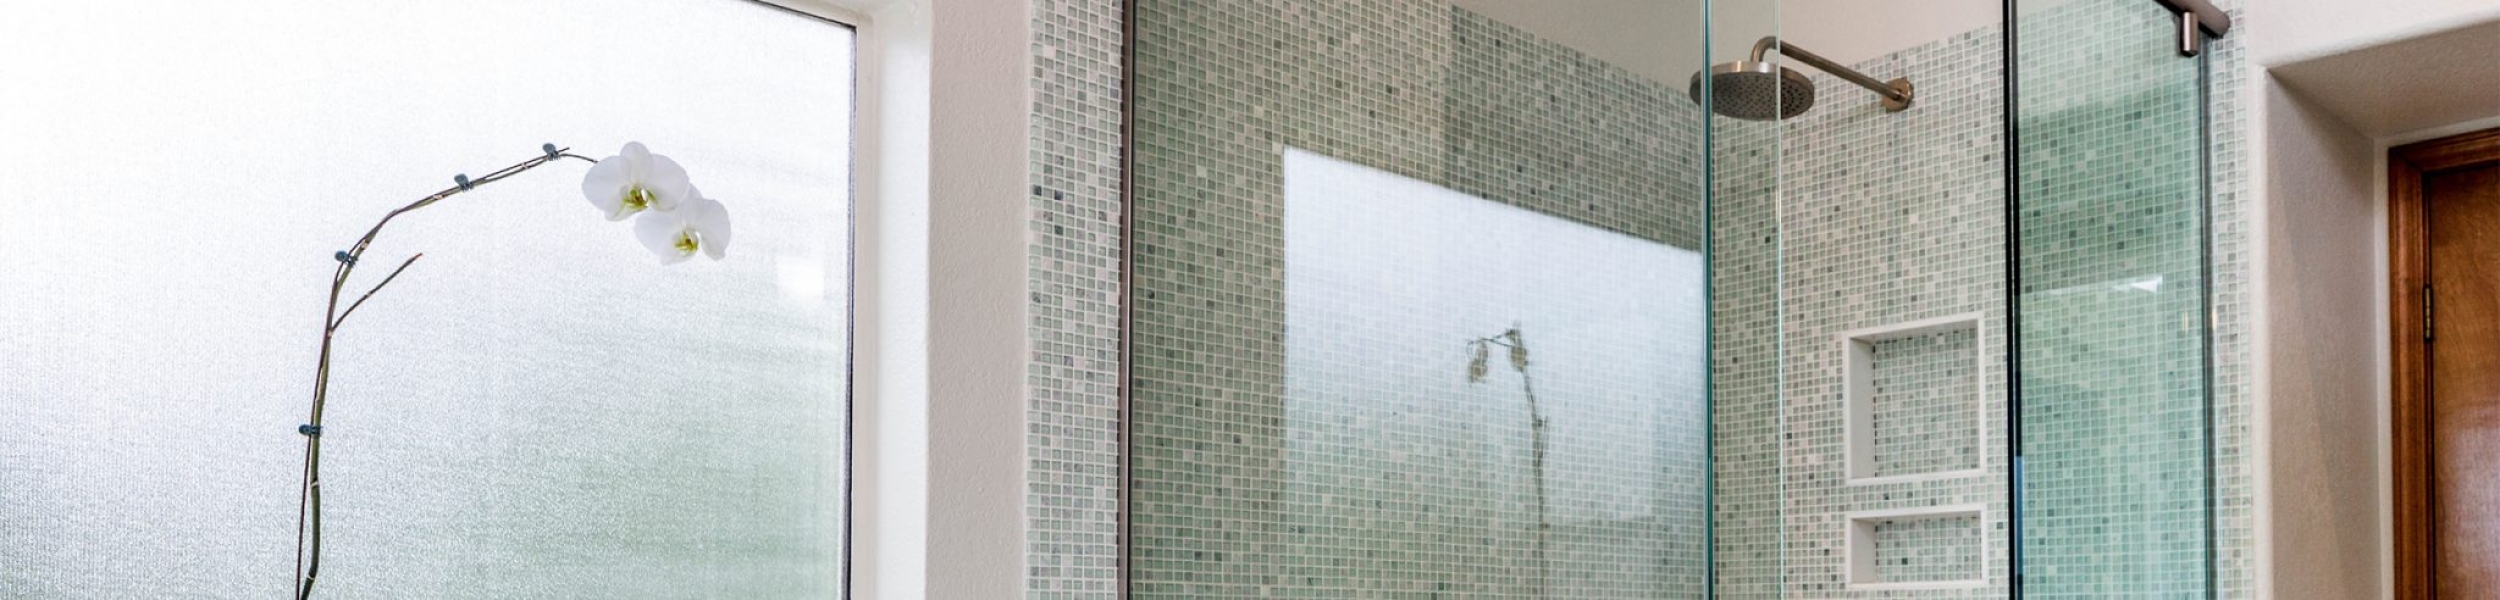 Spa Retreat Master Bathroom Shower Remodel Studio Em Interiors - Phoenix Interior Design - Tempe Interior Design - Chandler Interior Design